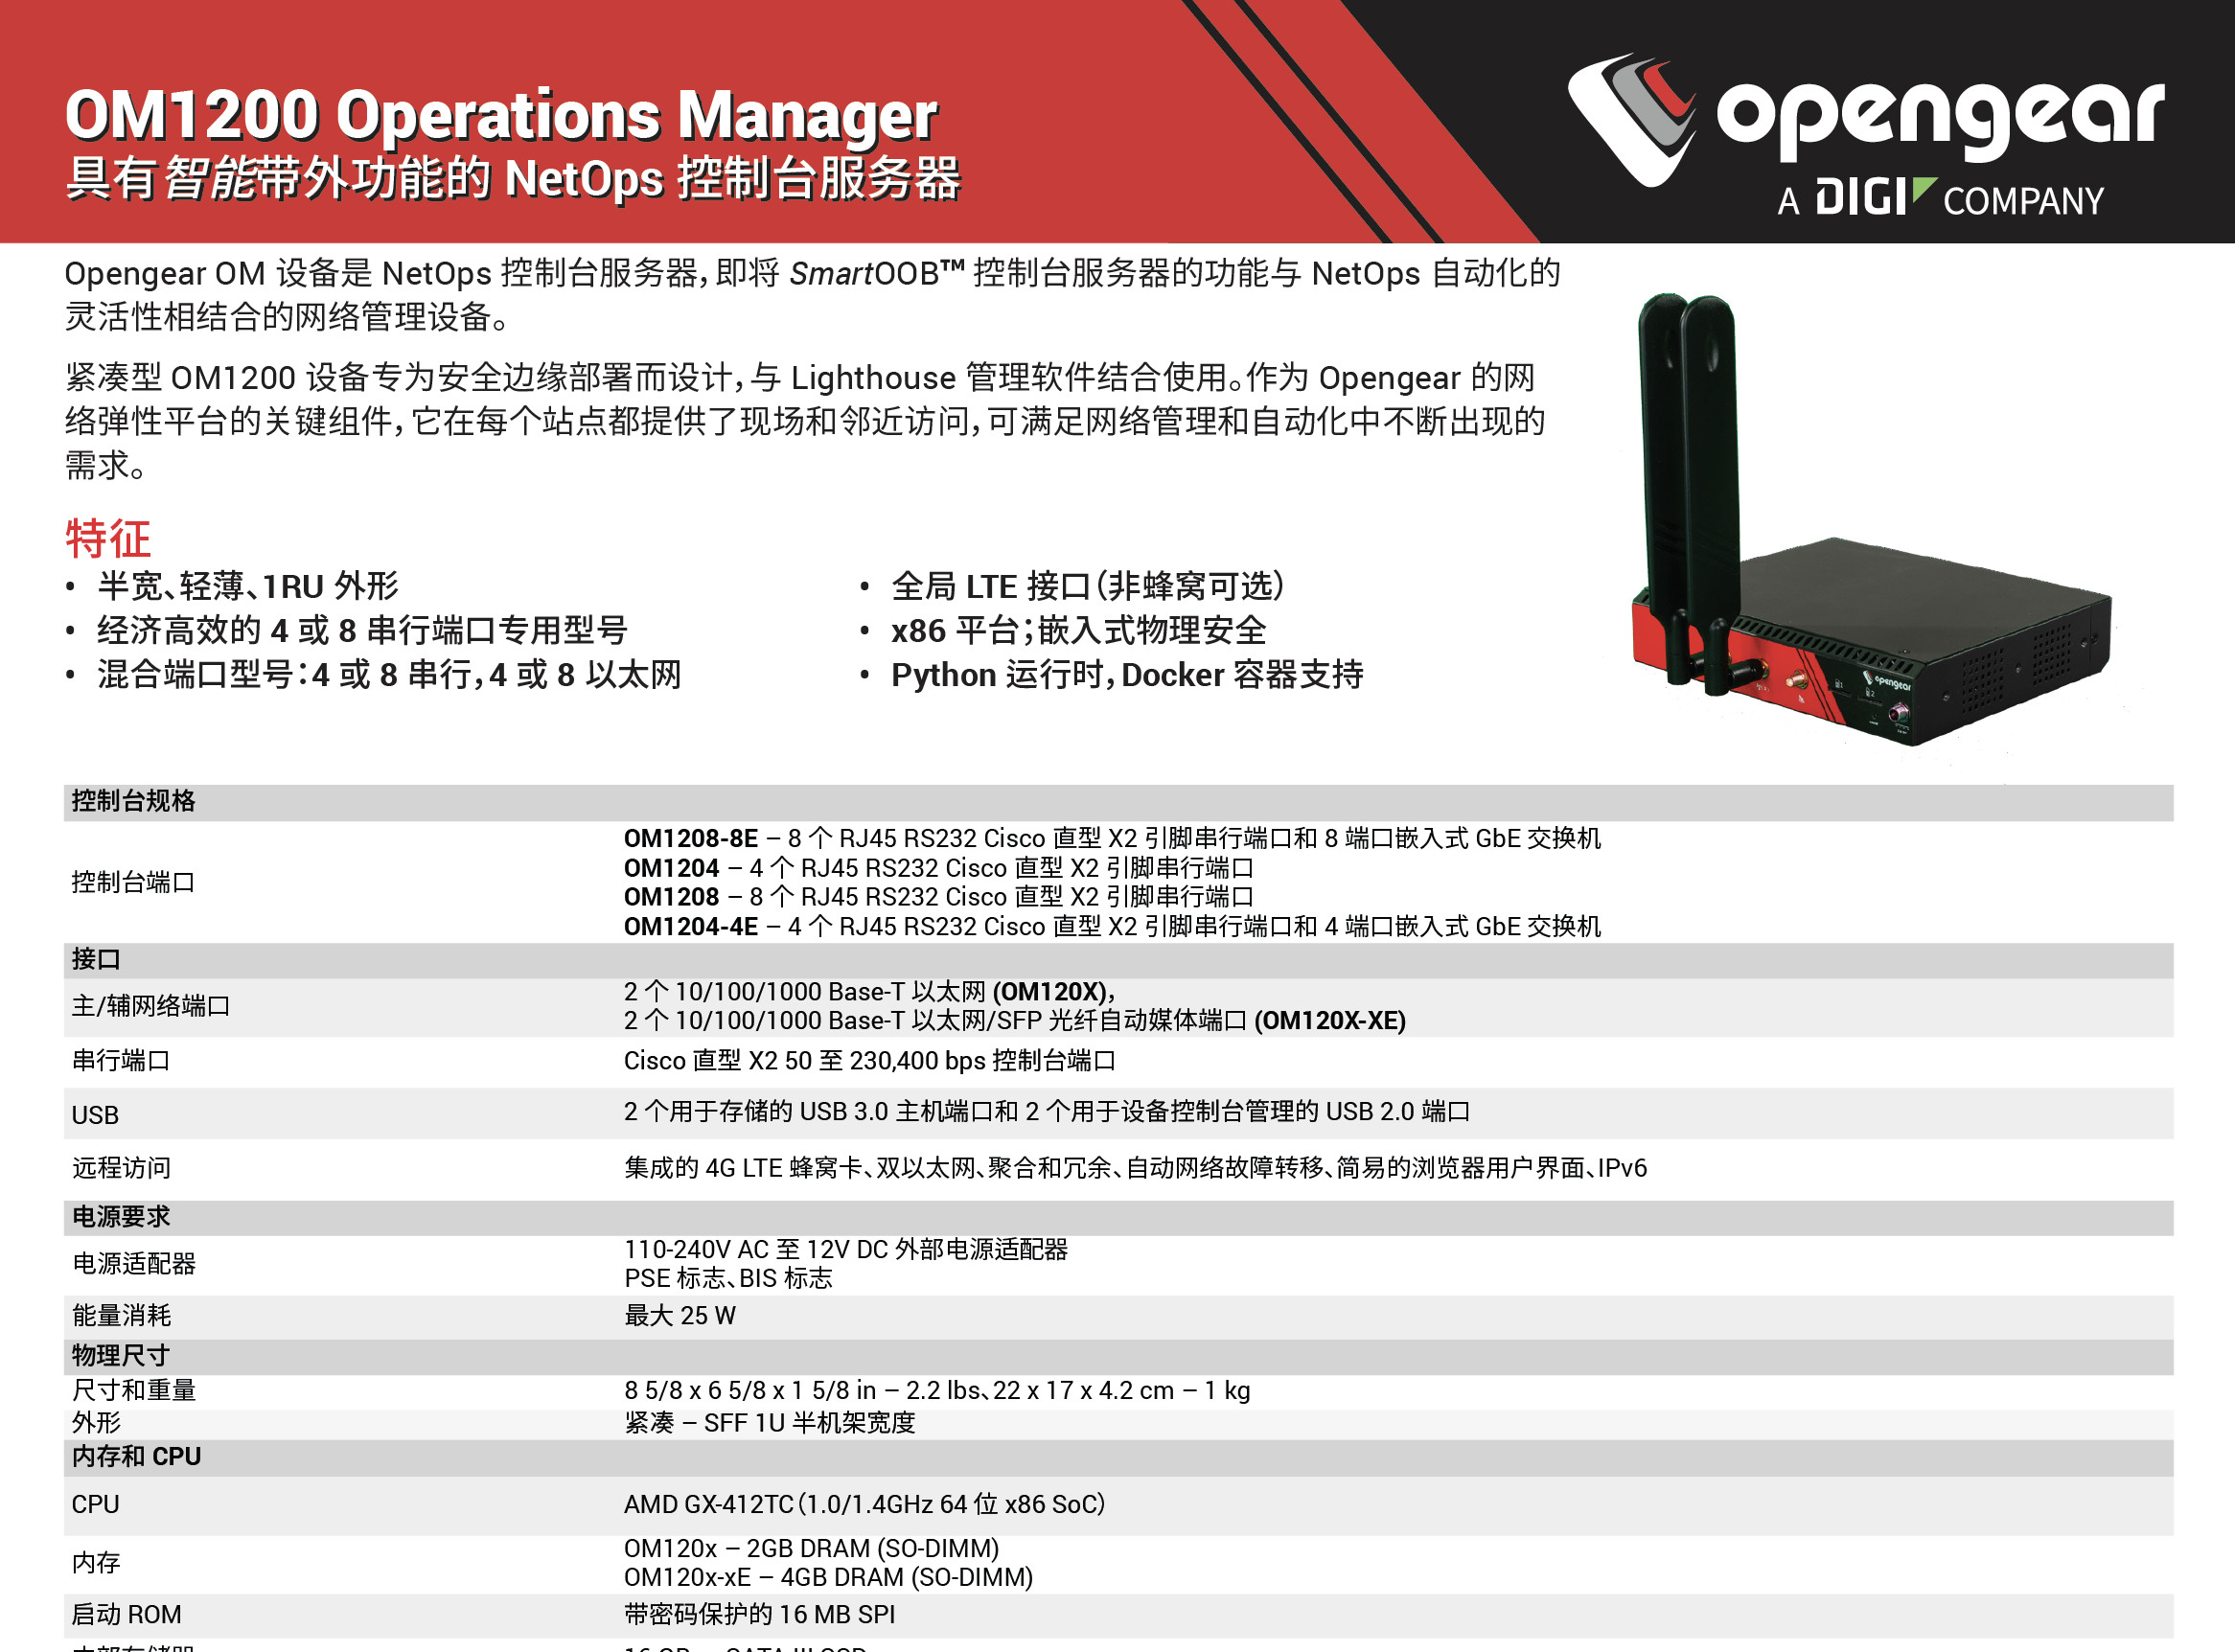 Opengear 1204-4E、Opengear 1208、Opengear 2216、Opengear 2224-24E、Opengear 2232、Opengear 2248、Opengear OM1204、Opengear OM1204-4E、Opengear OM1204-4E-L、Opengear OM1204-L、Opengear OM1208、Opengear OM1208-8E、Opengear OM1208-8E-L、Opengear OM1208-L、Opengear OGEXTWAR5-OM12、Opengear OGEXTWAR6-OM12、Opengear OM2216-EU、Opengear OM2216-L-EU、Opengear OM2224-24E-10G-EU、Opengear OM2224-24E-10G-L-EU、Opengear OM2224-24E-EU、Opengear OM2224-24E-L-EU、Opengear OM2232-EU、Opengear OM2232-L-EU、Opengear OM2248-10G-EU、Opengear OM2248-10G-L-EU、Opengear OM2248-EU、Opengear OM2248-L-EU